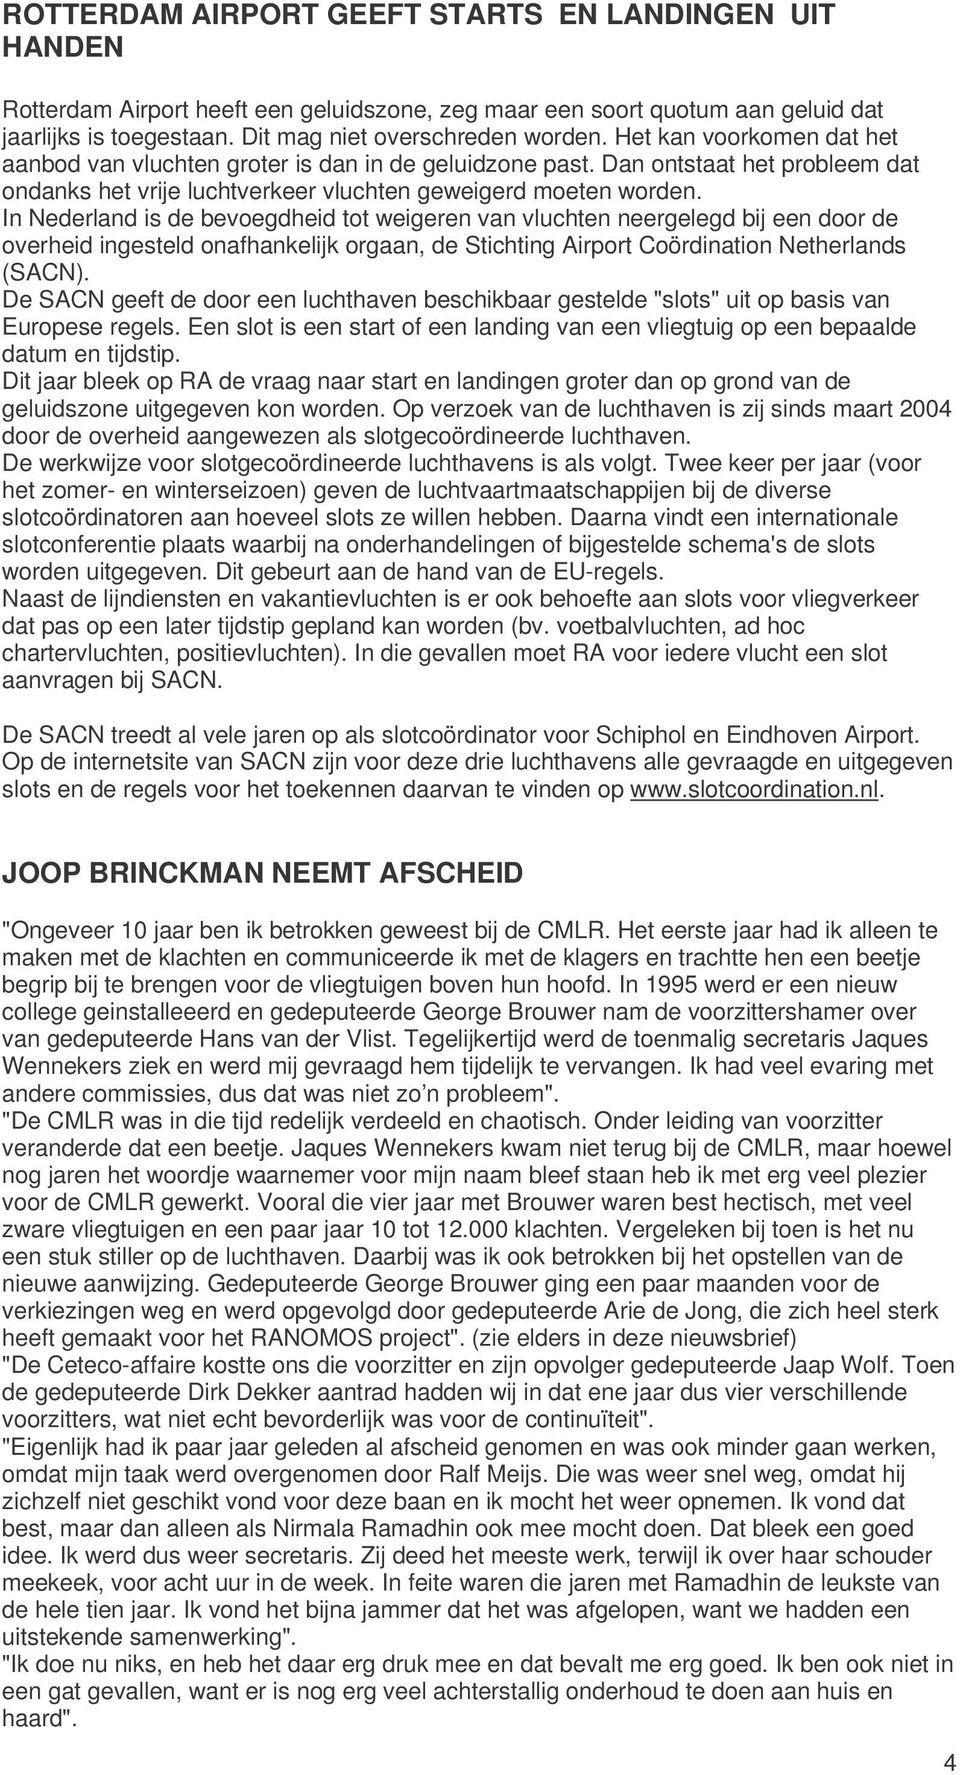 In Nederland is de bevoegdheid tot weigeren van vluchten neergelegd bij een door de overheid ingesteld onafhankelijk orgaan, de Stichting Airport Coördination Netherlands (SACN).